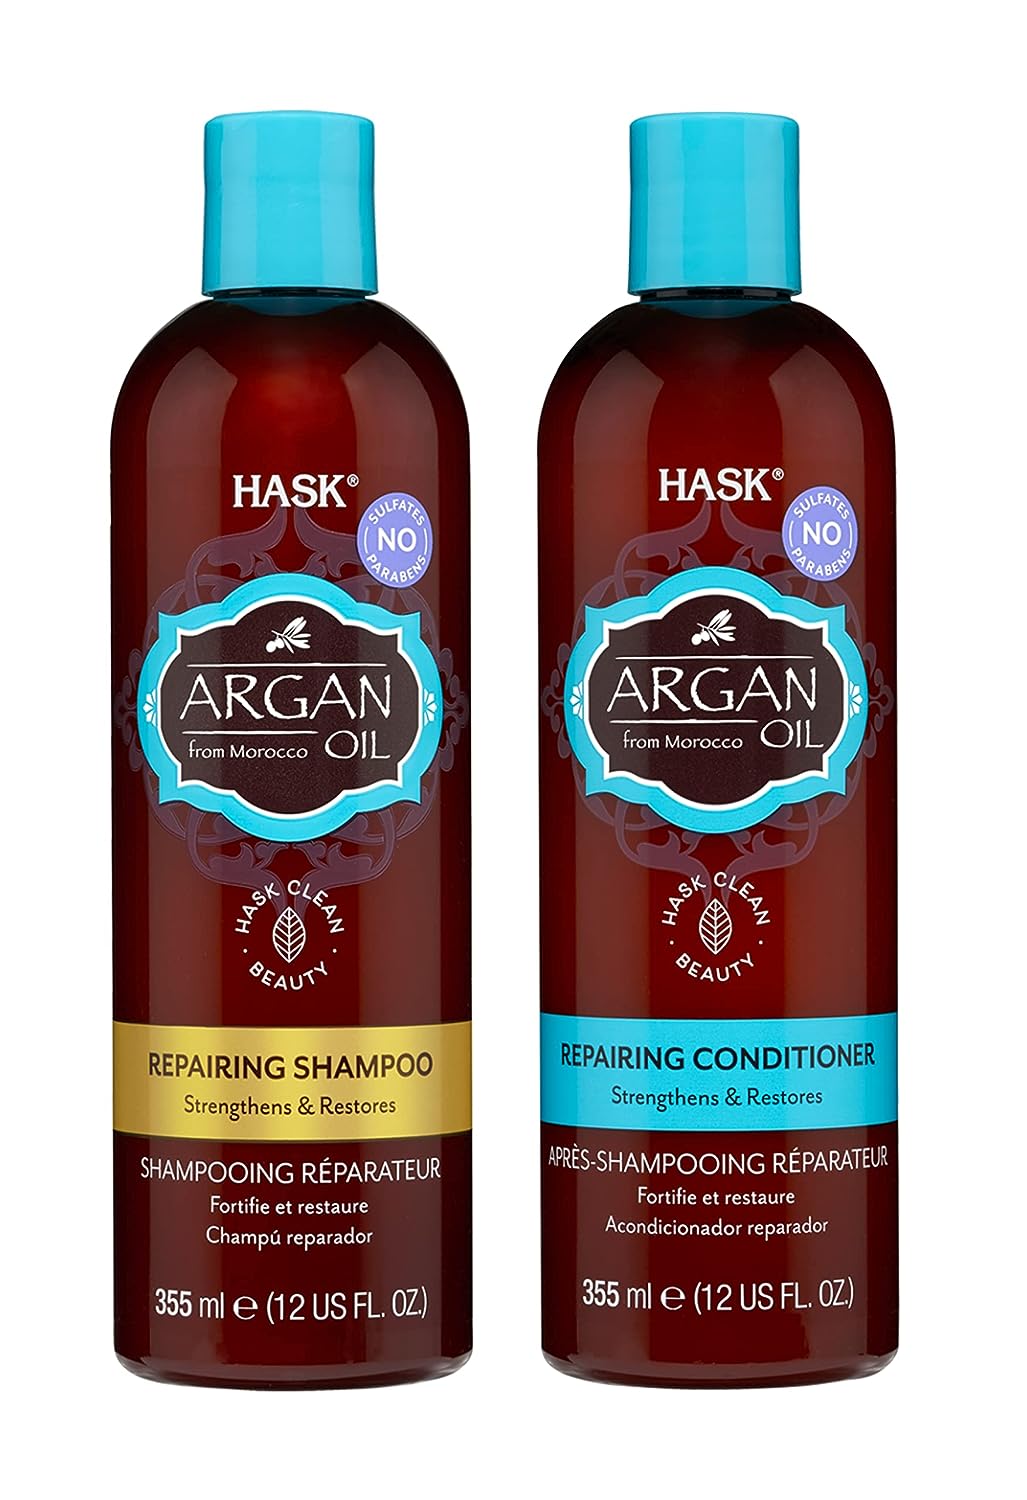 czy szampon hask argan oil